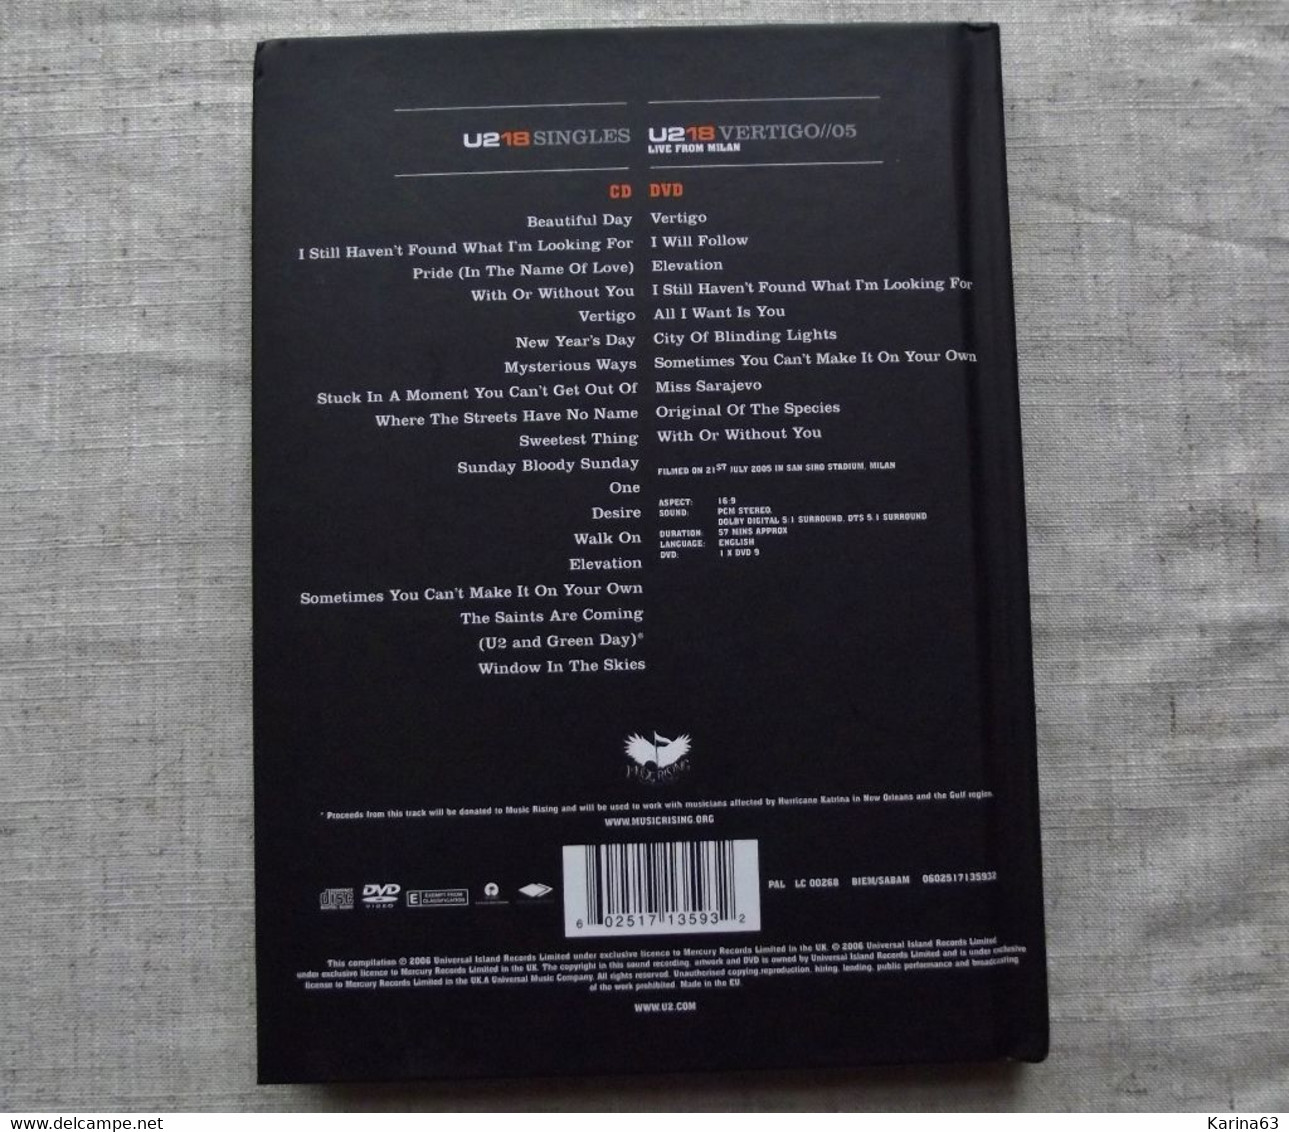 U2 - 18 Singles - 2006 - Musik-DVD's